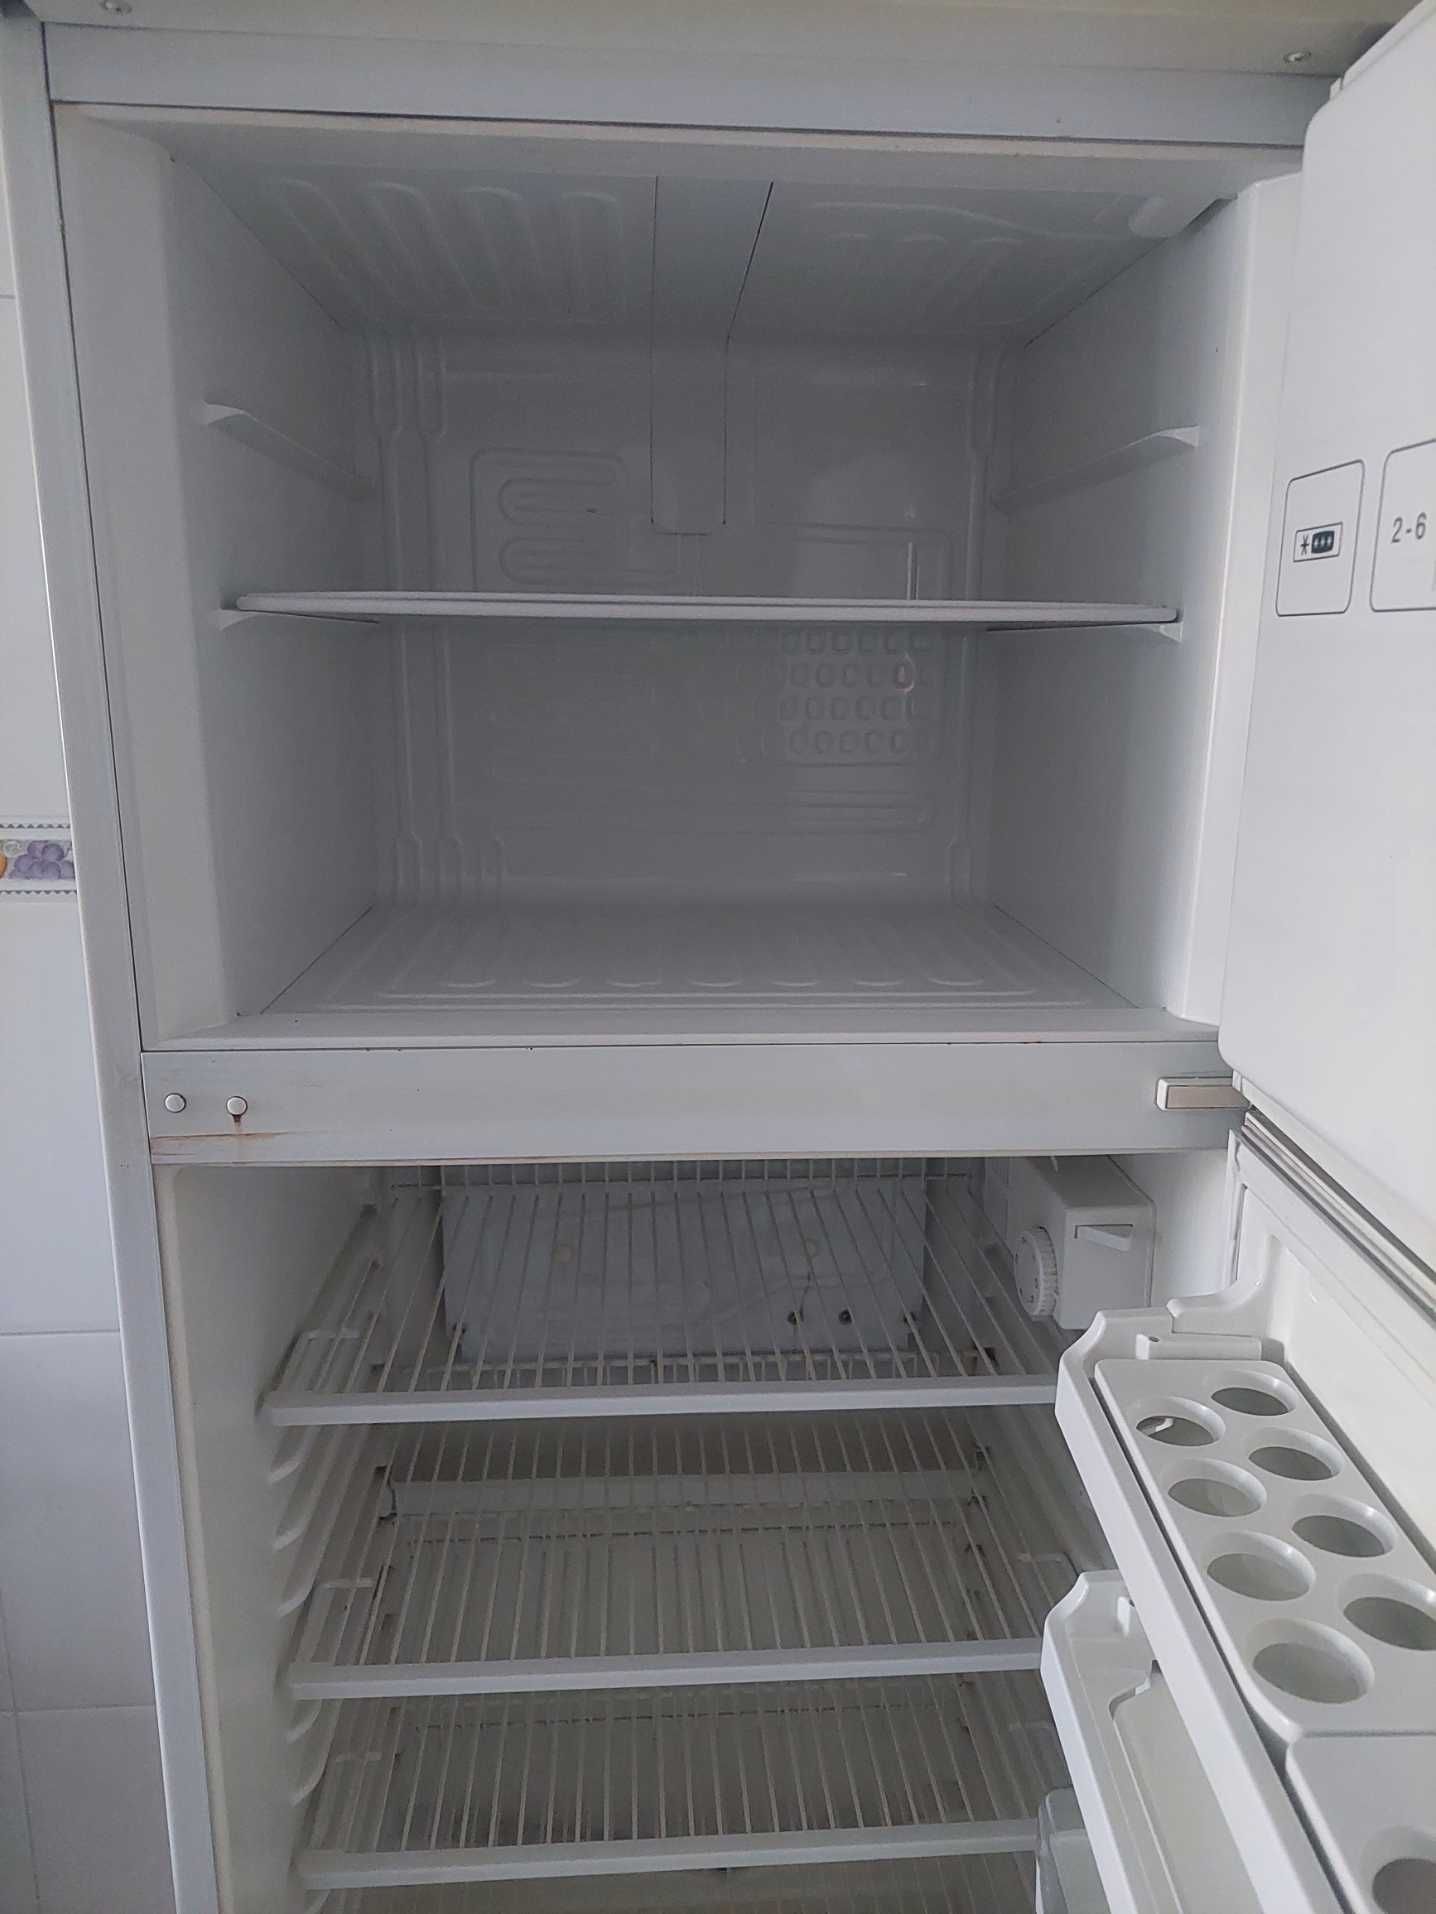 Frigorifico + congelador Balay - Usado em bom estado (Matosinhos)